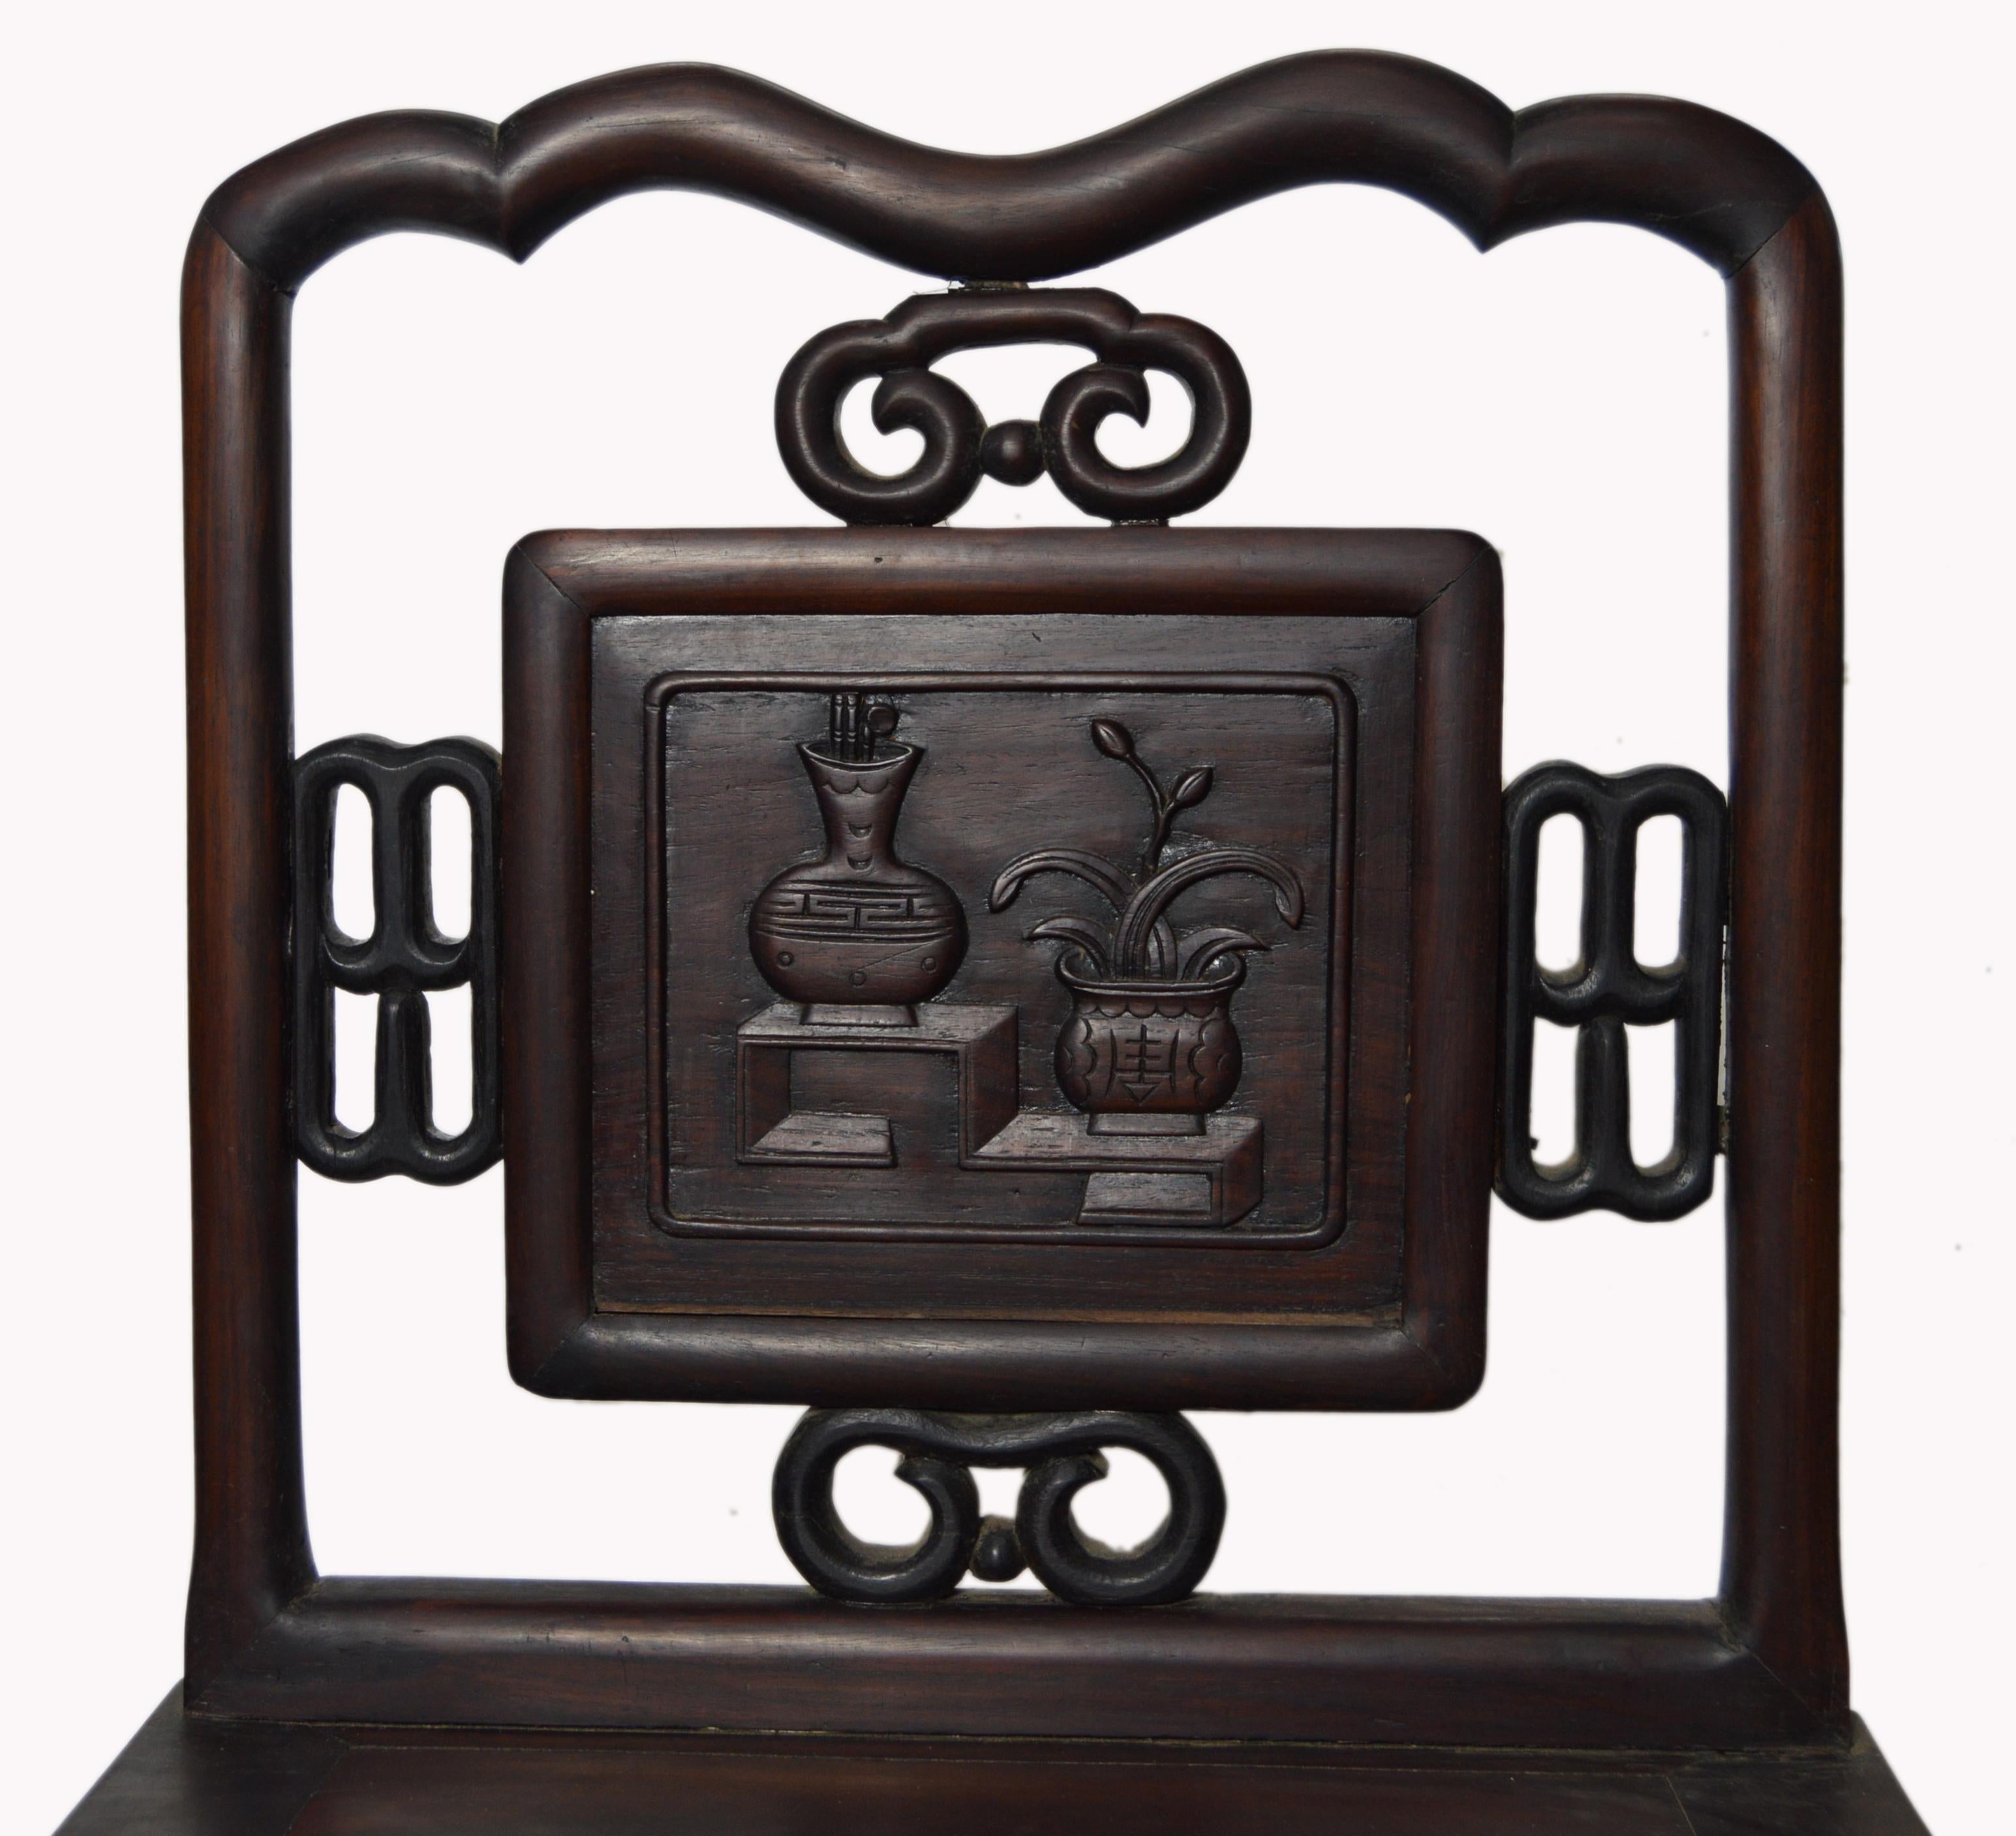 Ein handgeschnitzter chinesischer Akzentstuhl aus Yumu-Holz aus dem frühen 20. Jahrhundert, dunkelbraun lackiert, mit Laubsägearbeiten und geschnitzter Leiste. Dieser exquisite chinesische Beistellstuhl verfügt über eine rechteckige durchbrochene